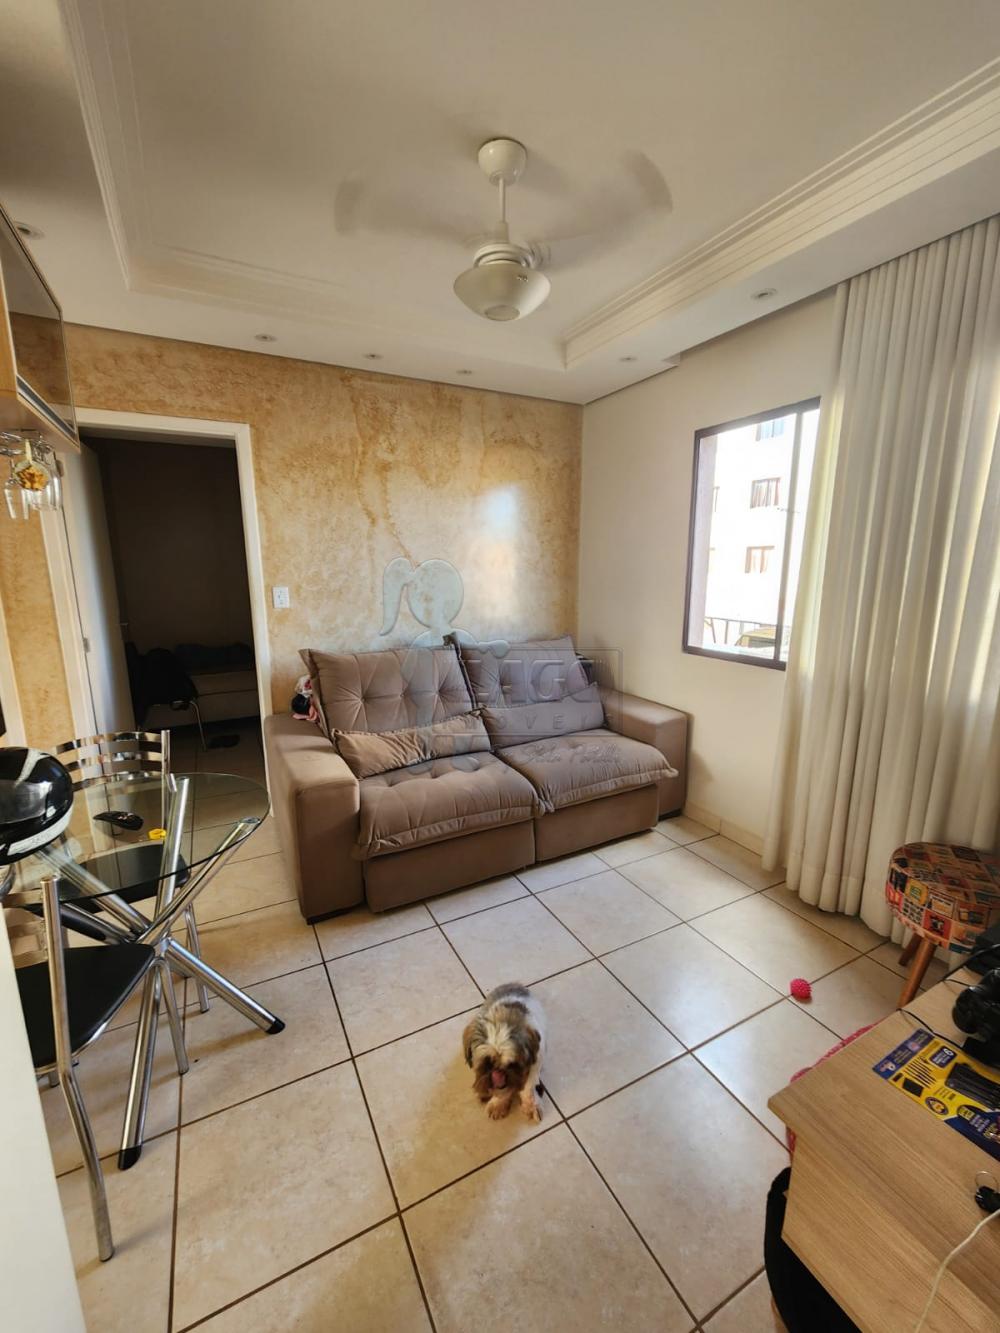 Alugar Apartamentos / Padrão em Ribeirão Preto R$ 1.000,00 - Foto 5